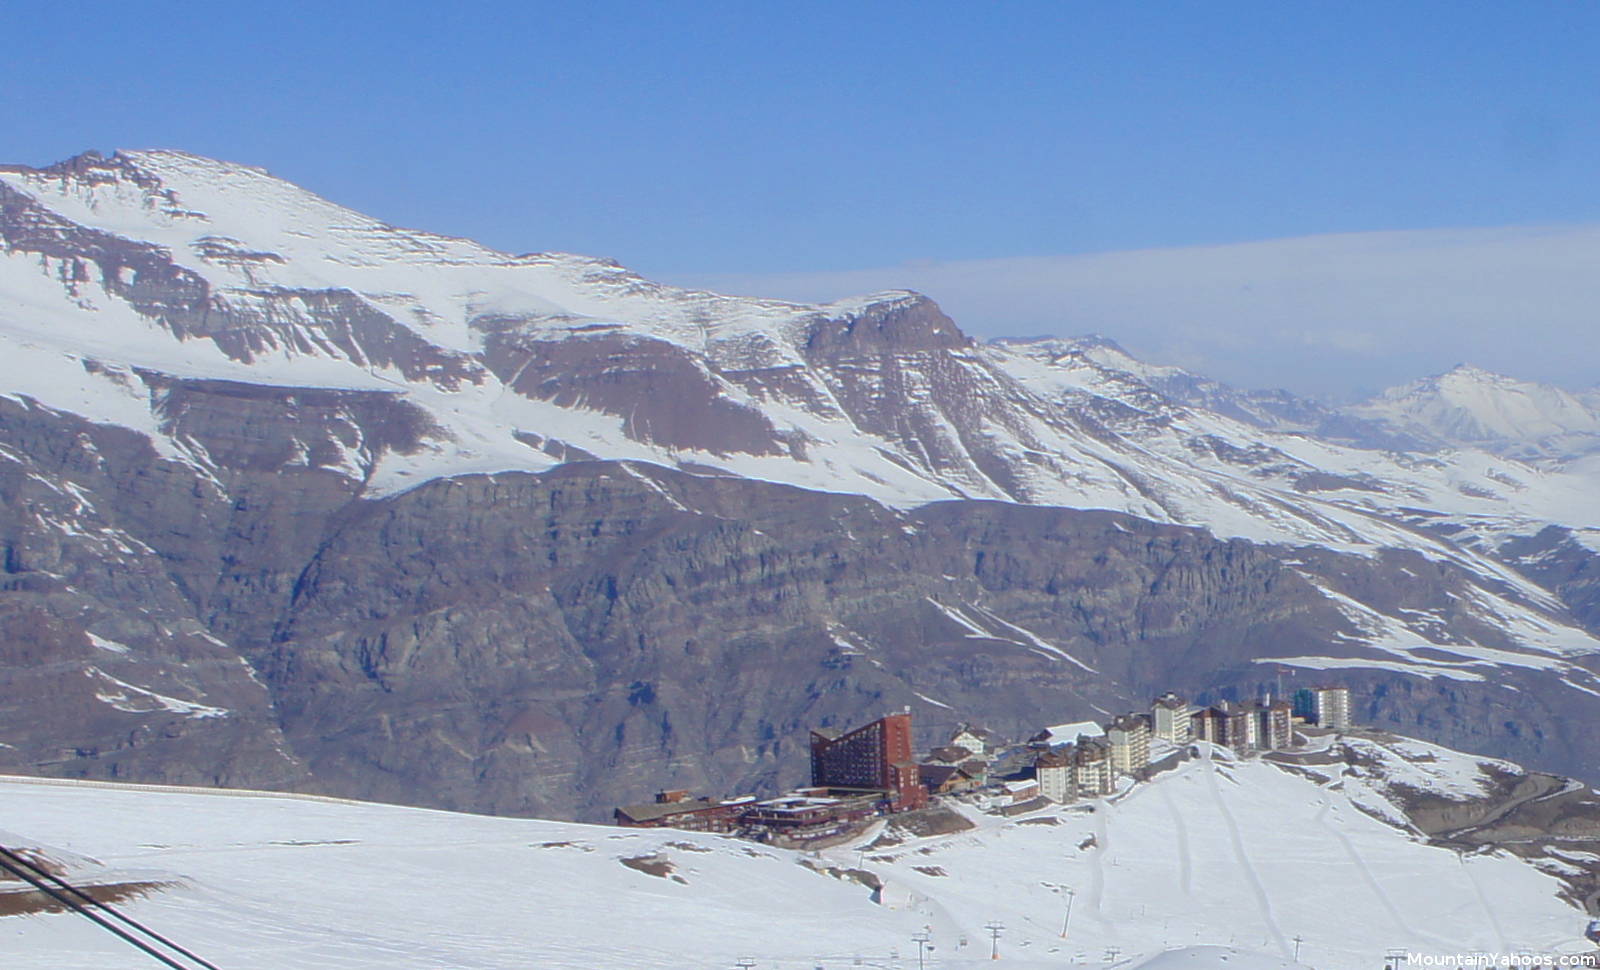 Valle Nevado ski resort base accommodations